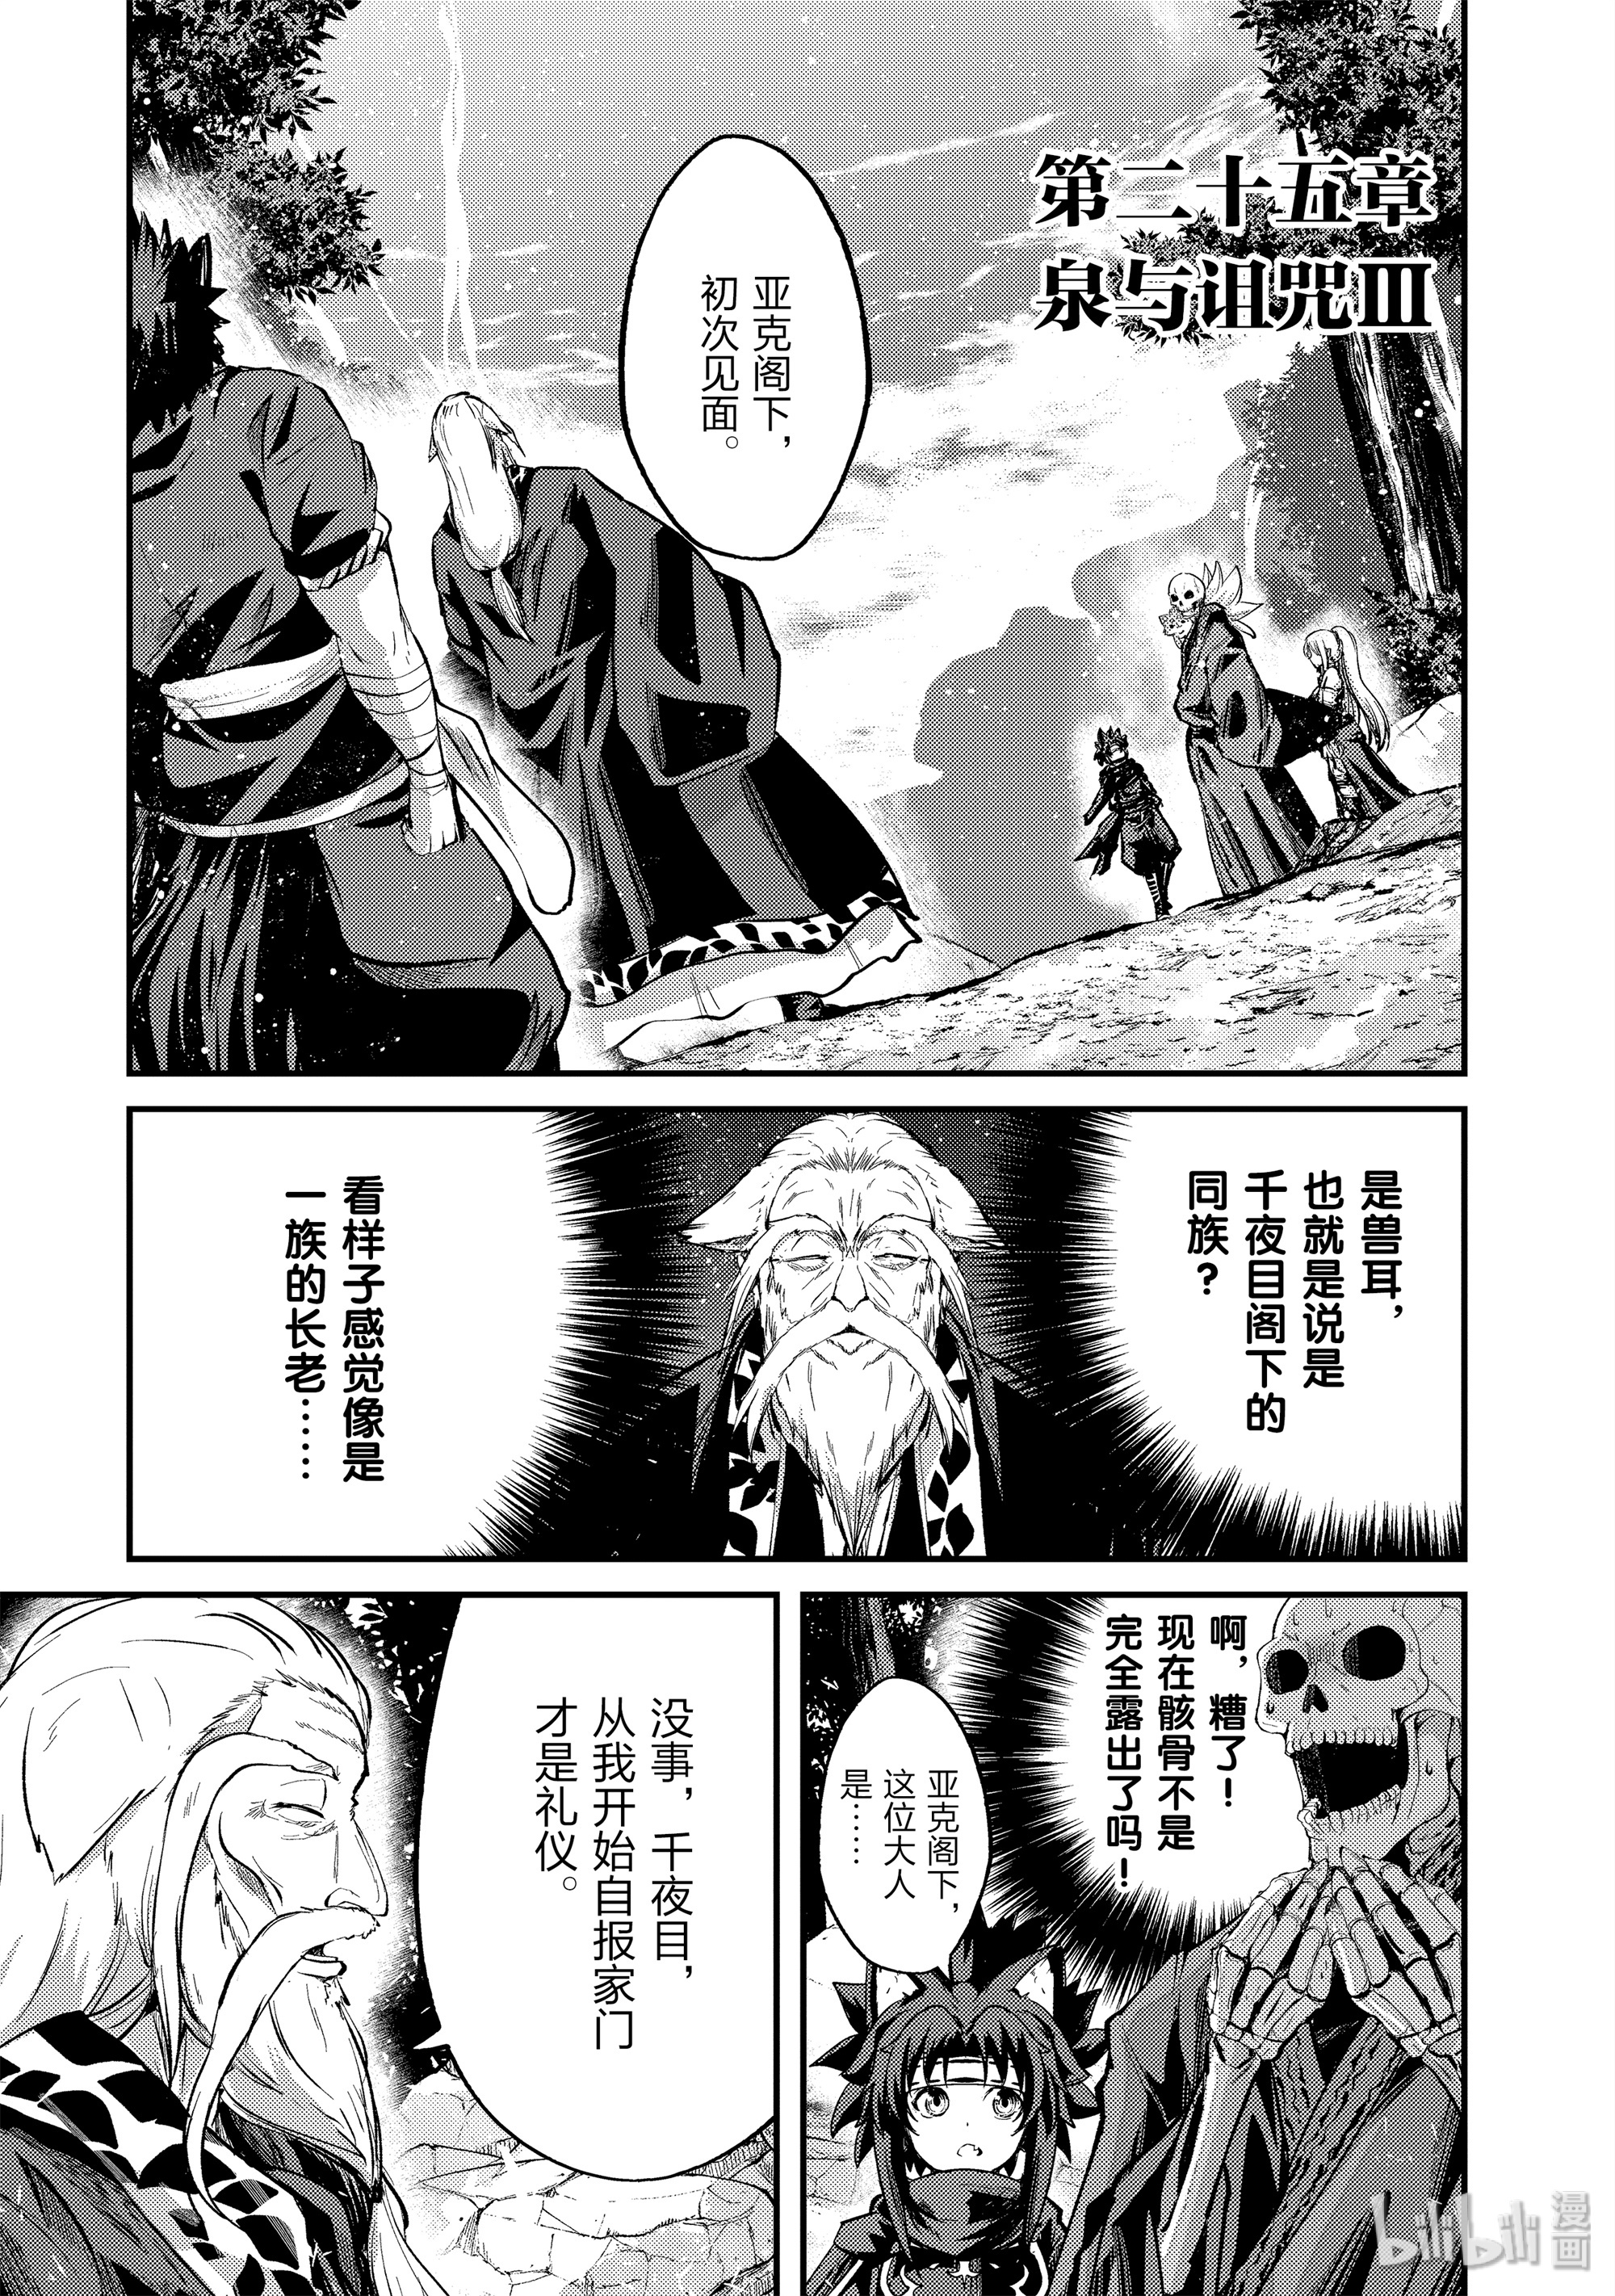 《骸骨骑士大人异世界冒险中》25 泉与诅咒Ⅲ第1页